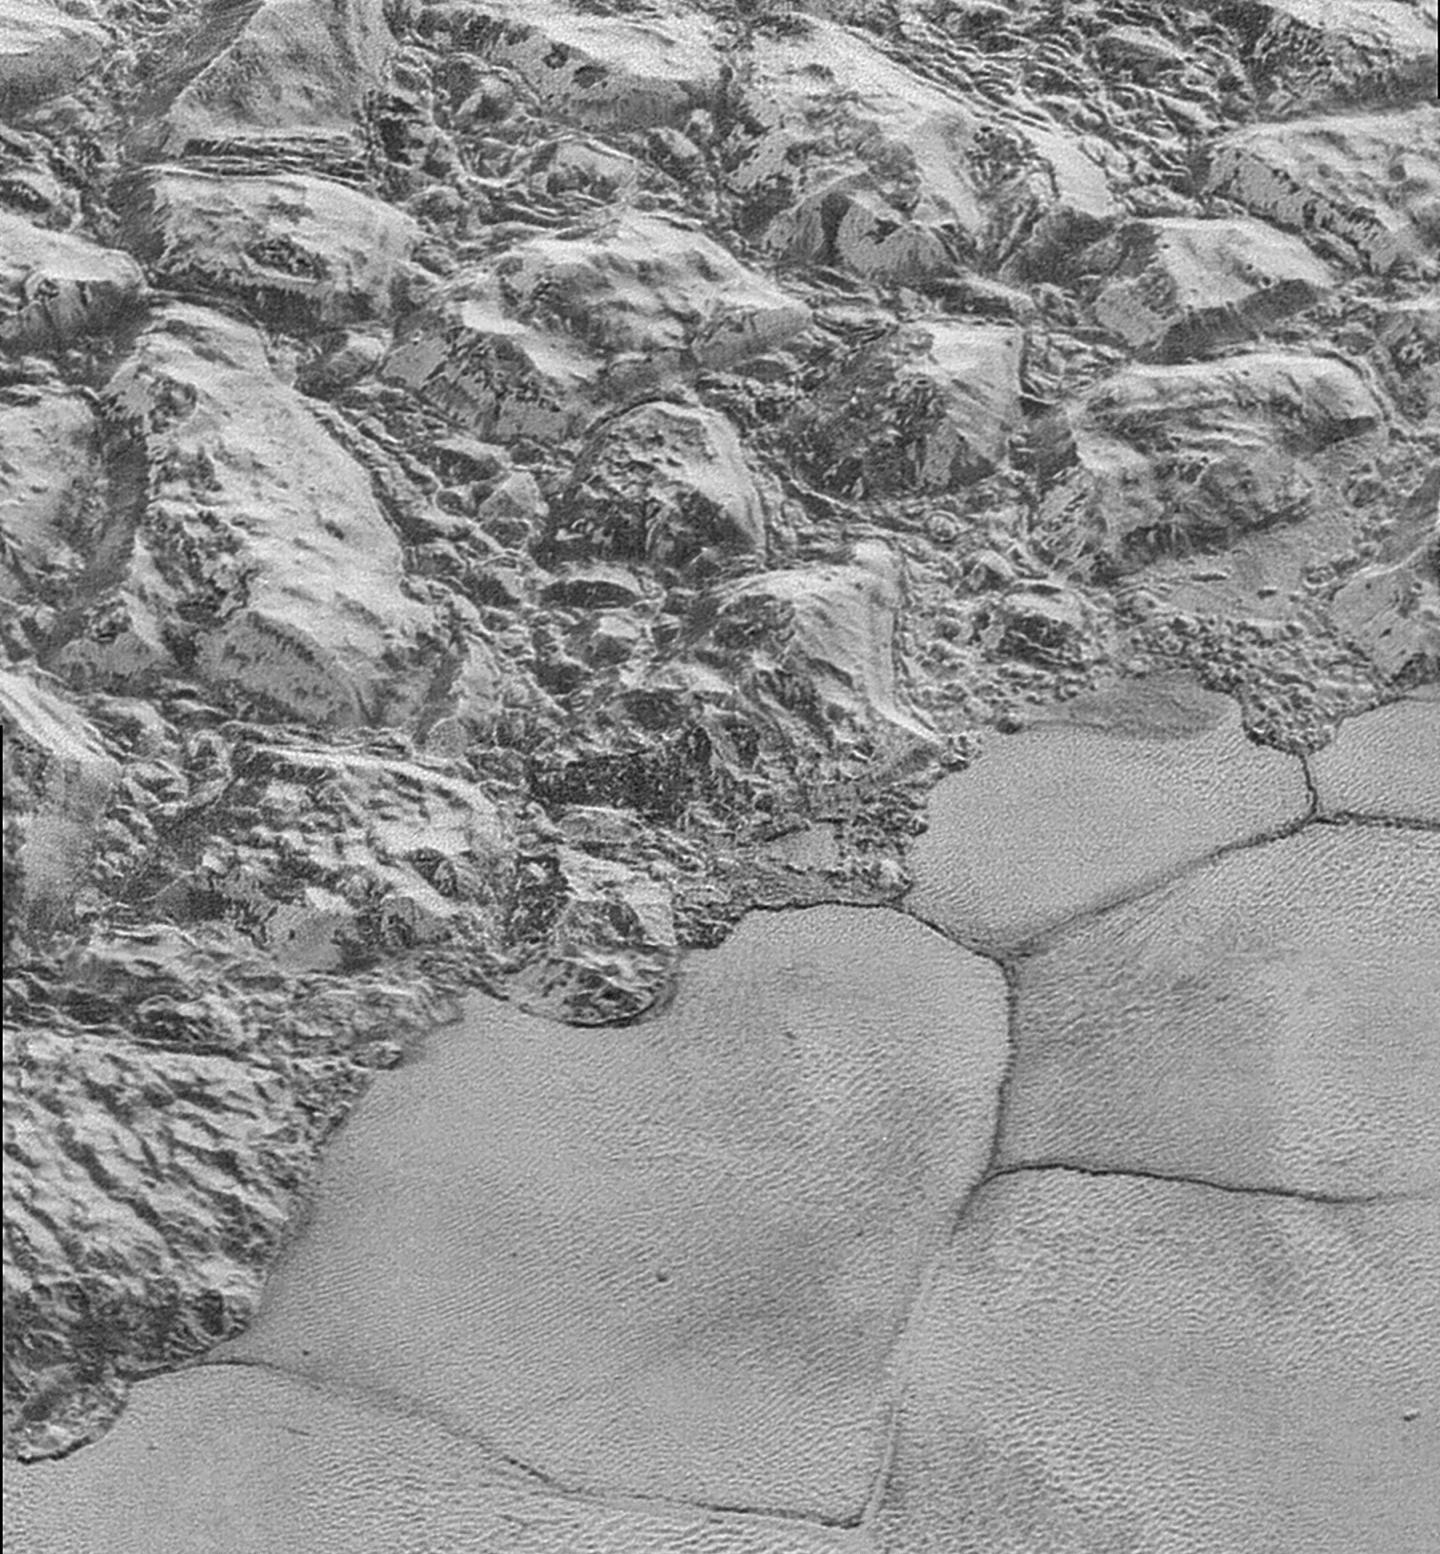 Duny na povrchu planety Pluto ve spodní polovině obrázku v oblasti zvané Sputnik Planitia. Horský hřeben pokrývá horní polovinu obrázku, jehož šířka činí 75 km. NASA/Johns Hopkins University Applied Physics Laboratory/Southwest Research Institute.